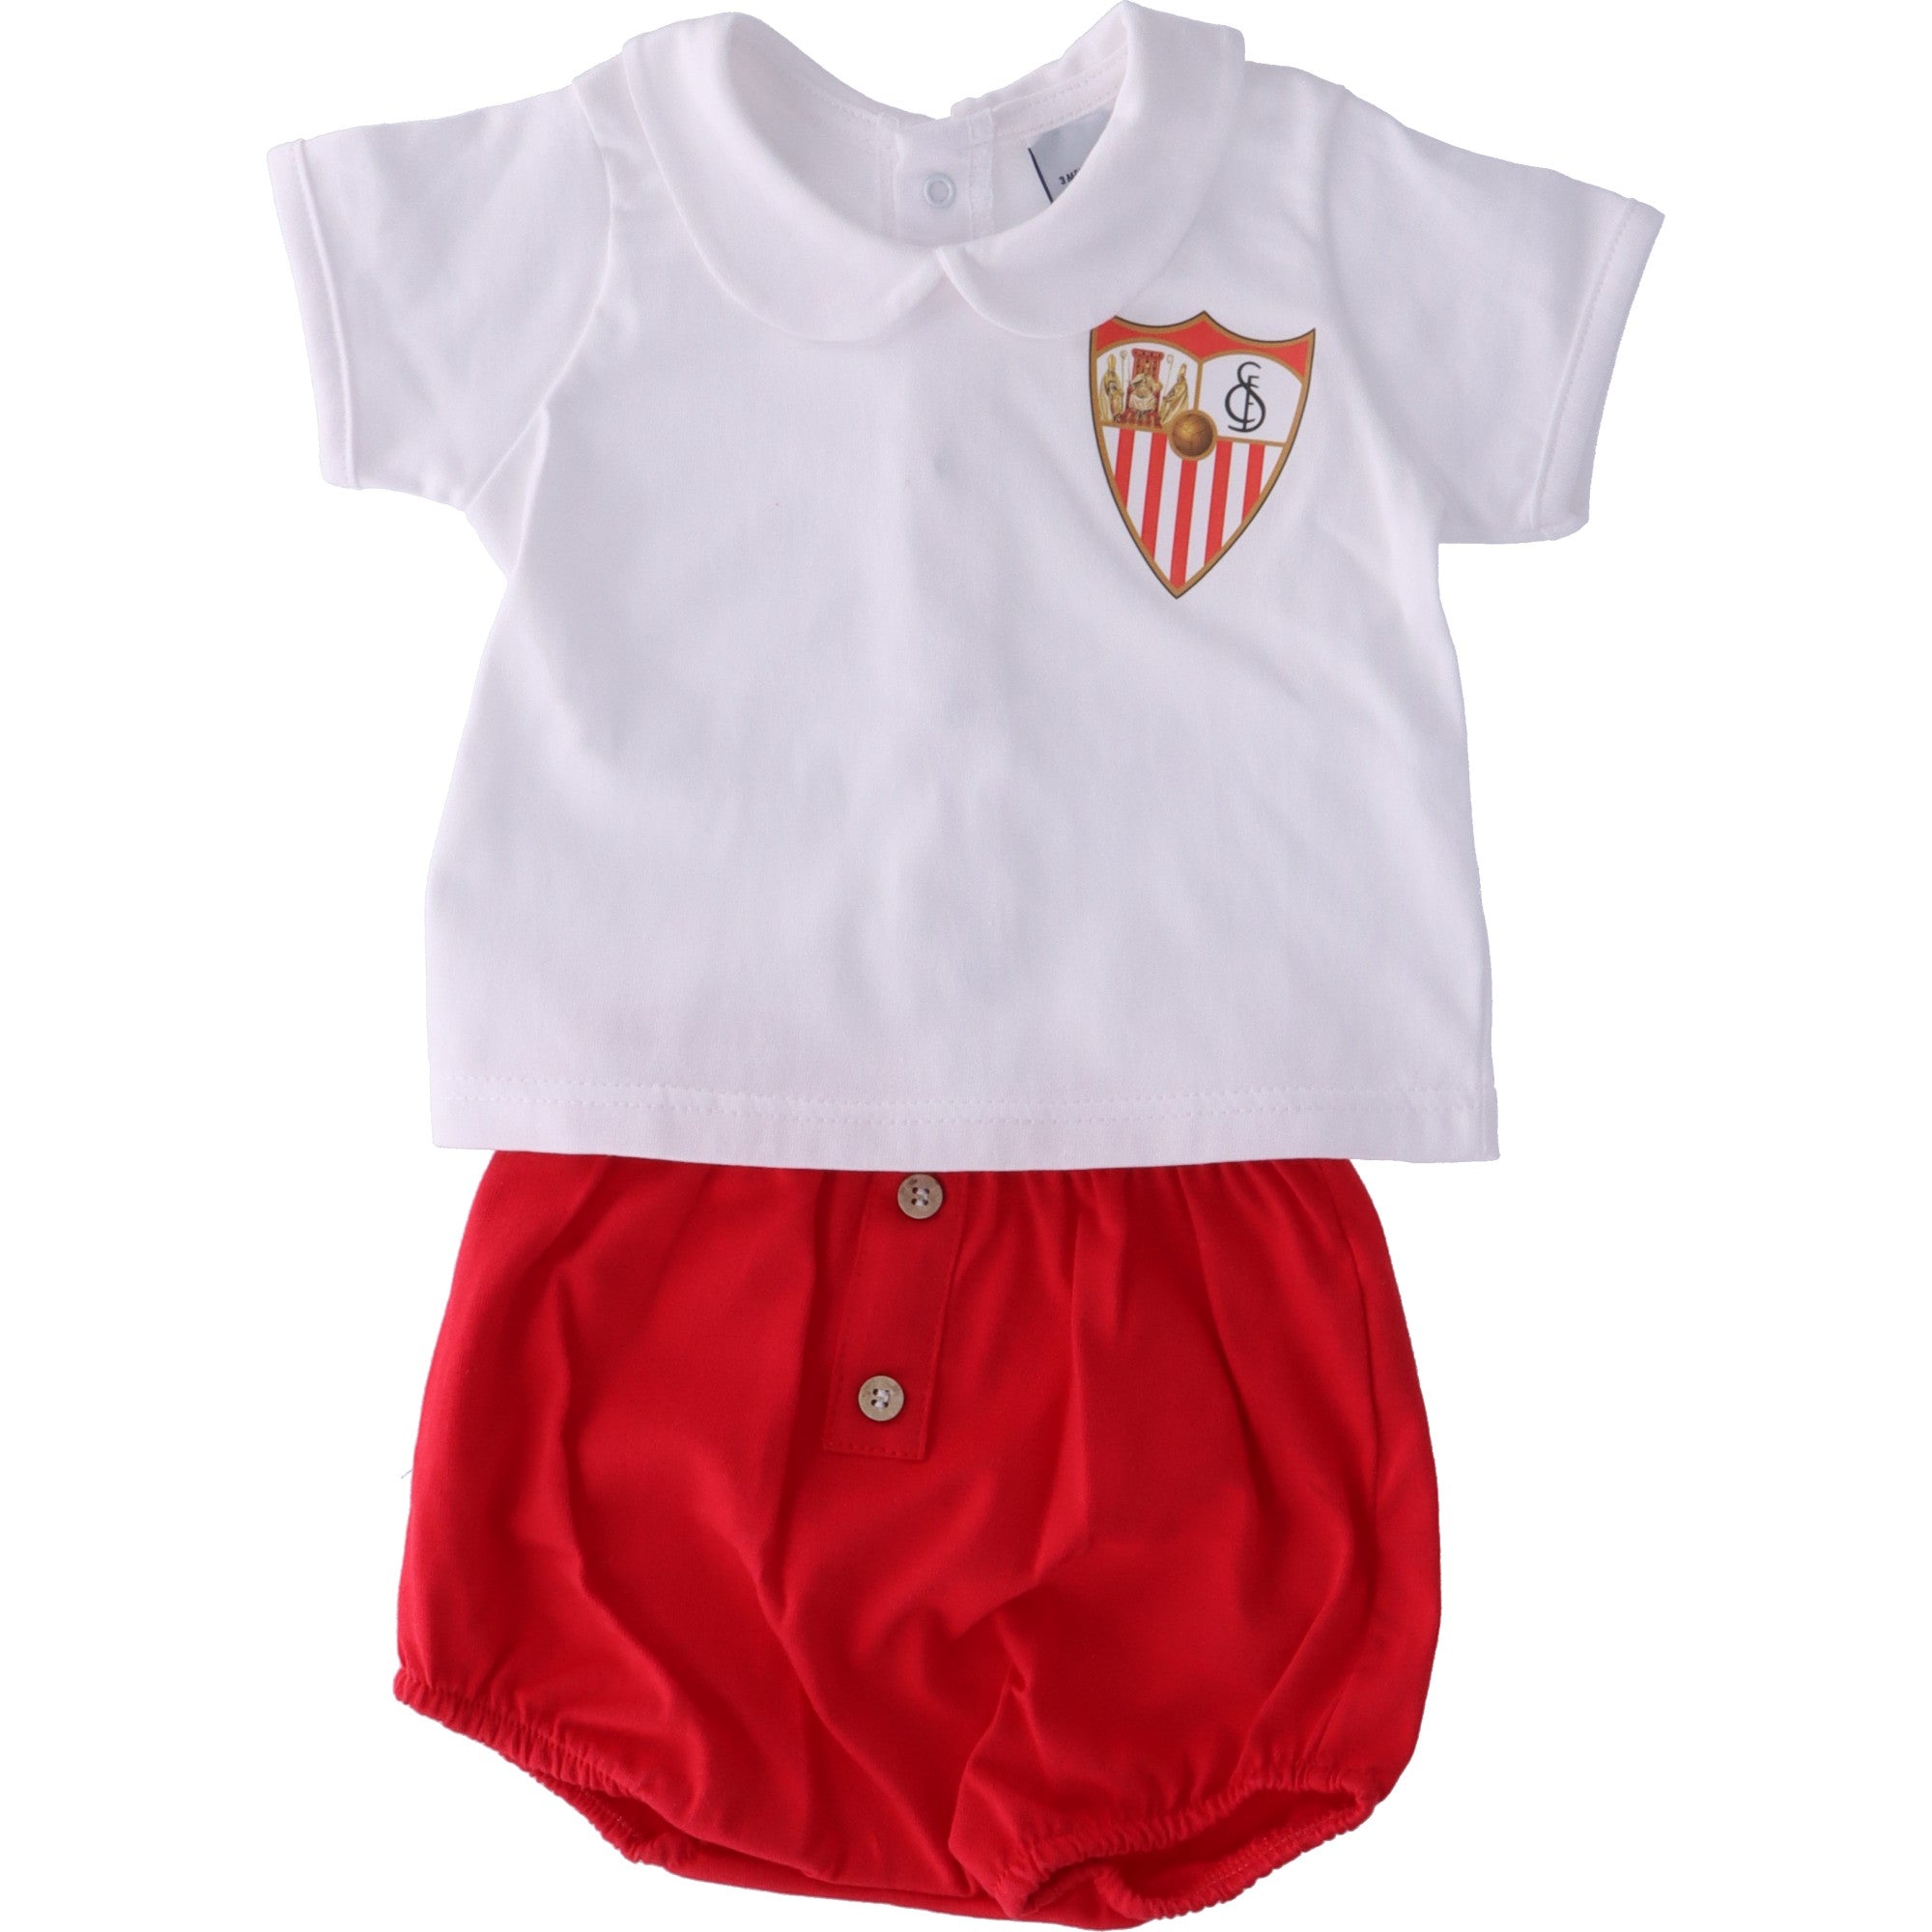 Babies Red & White Kit